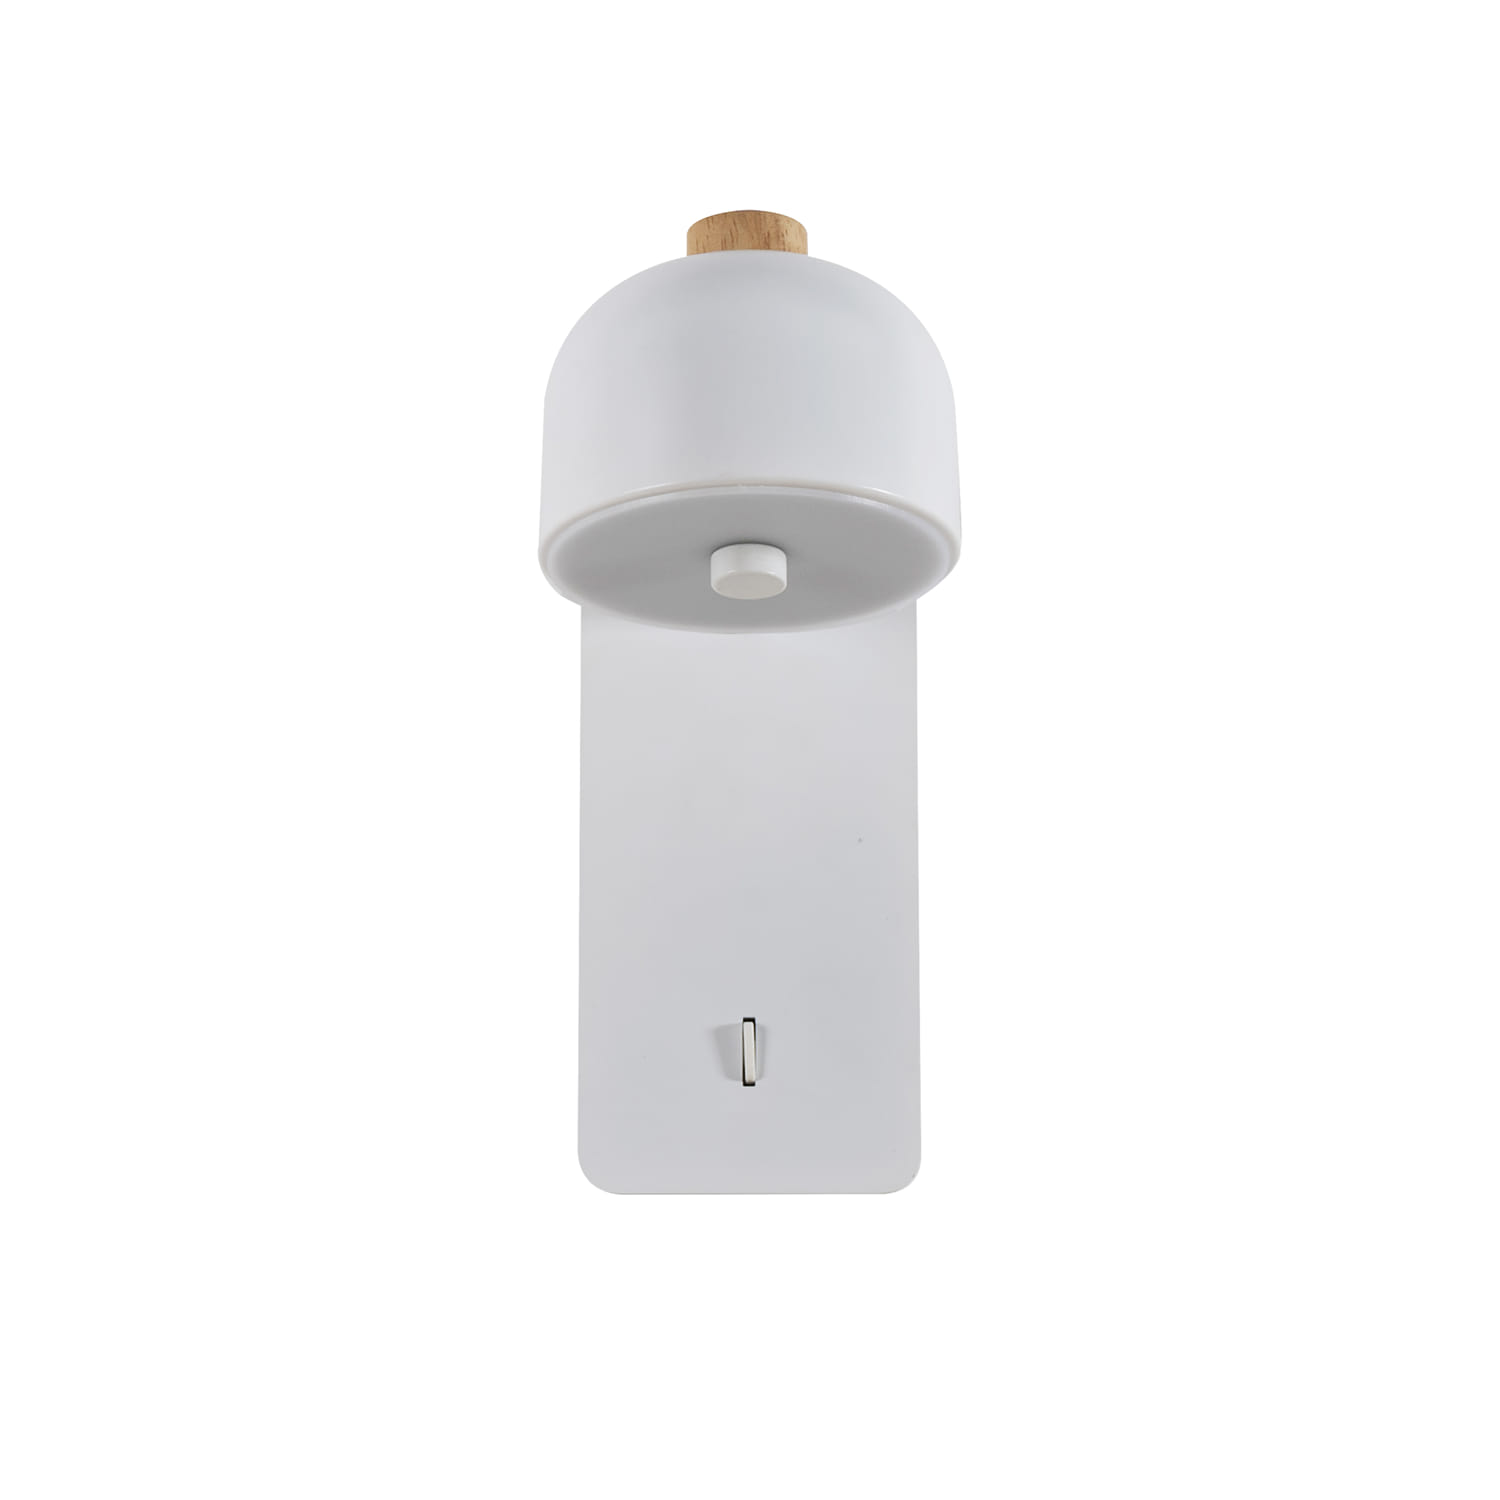 Бра Favourite Mauris 2834-1W, D165*W95*H210, настенный поворотный светильник белого цвета, с выключателем, декорирован деревянным элементом, акриловый матовый рассеиватель